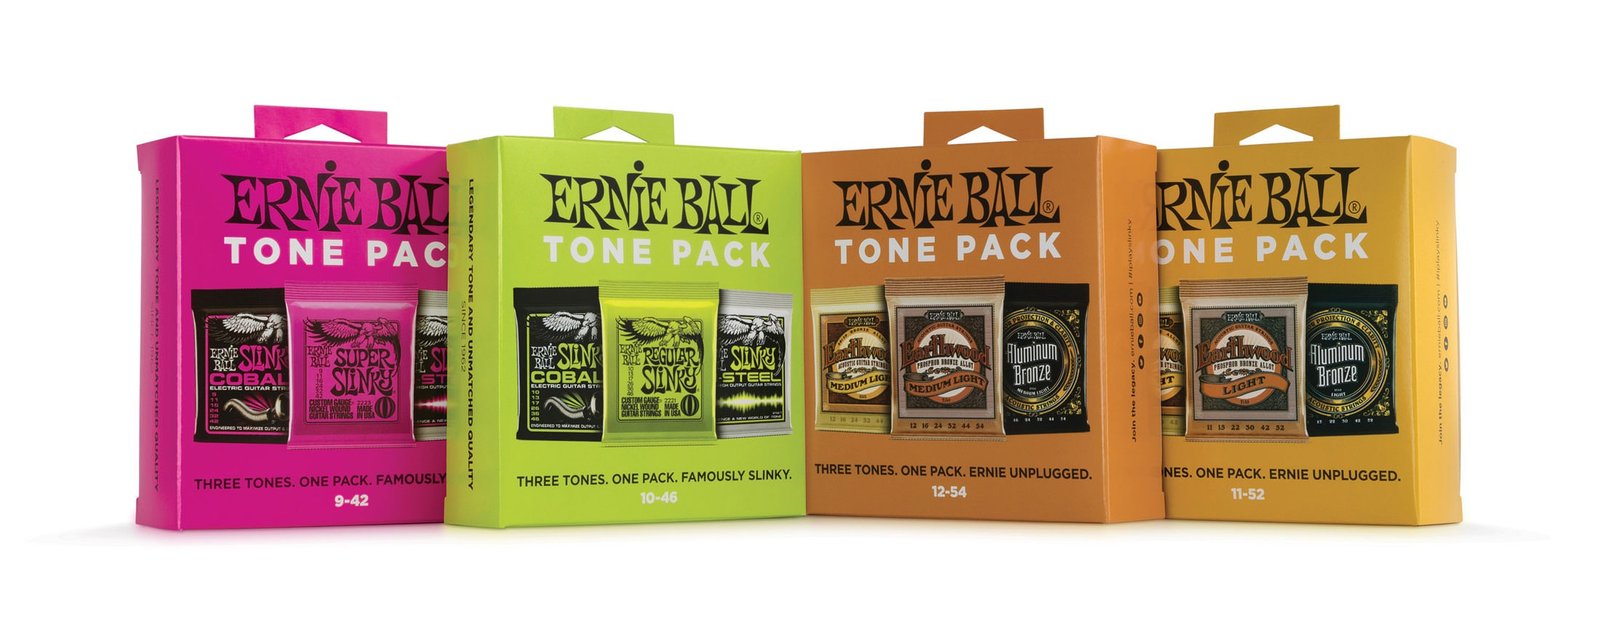 Ernie Ball Strings Tone Pack Packaging